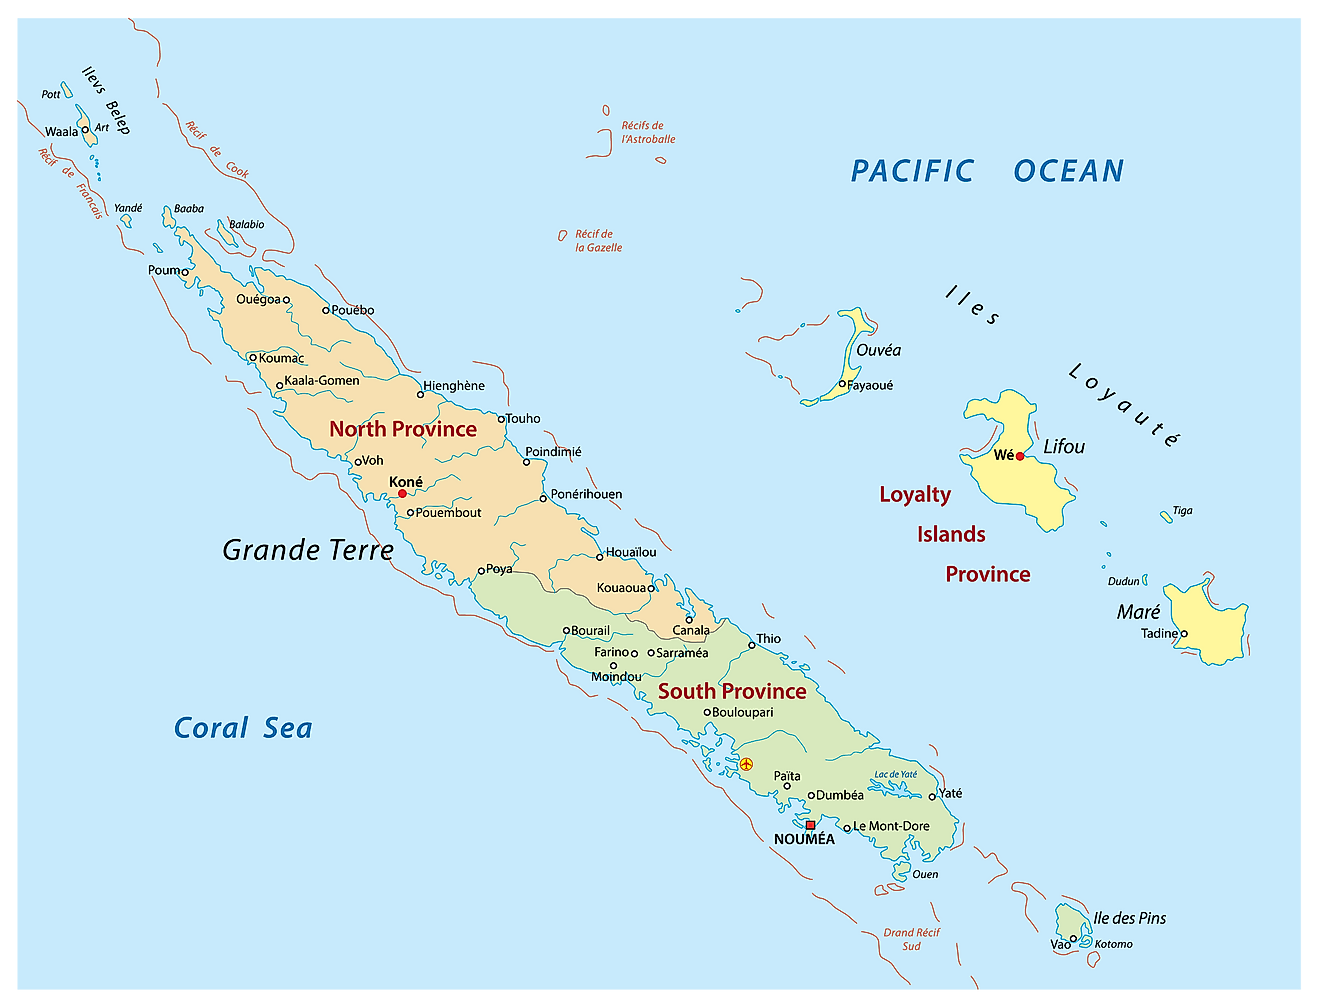 Mapa Político de Nueva Caledonia mostrando sus 3 provincias y la capital Nouméa